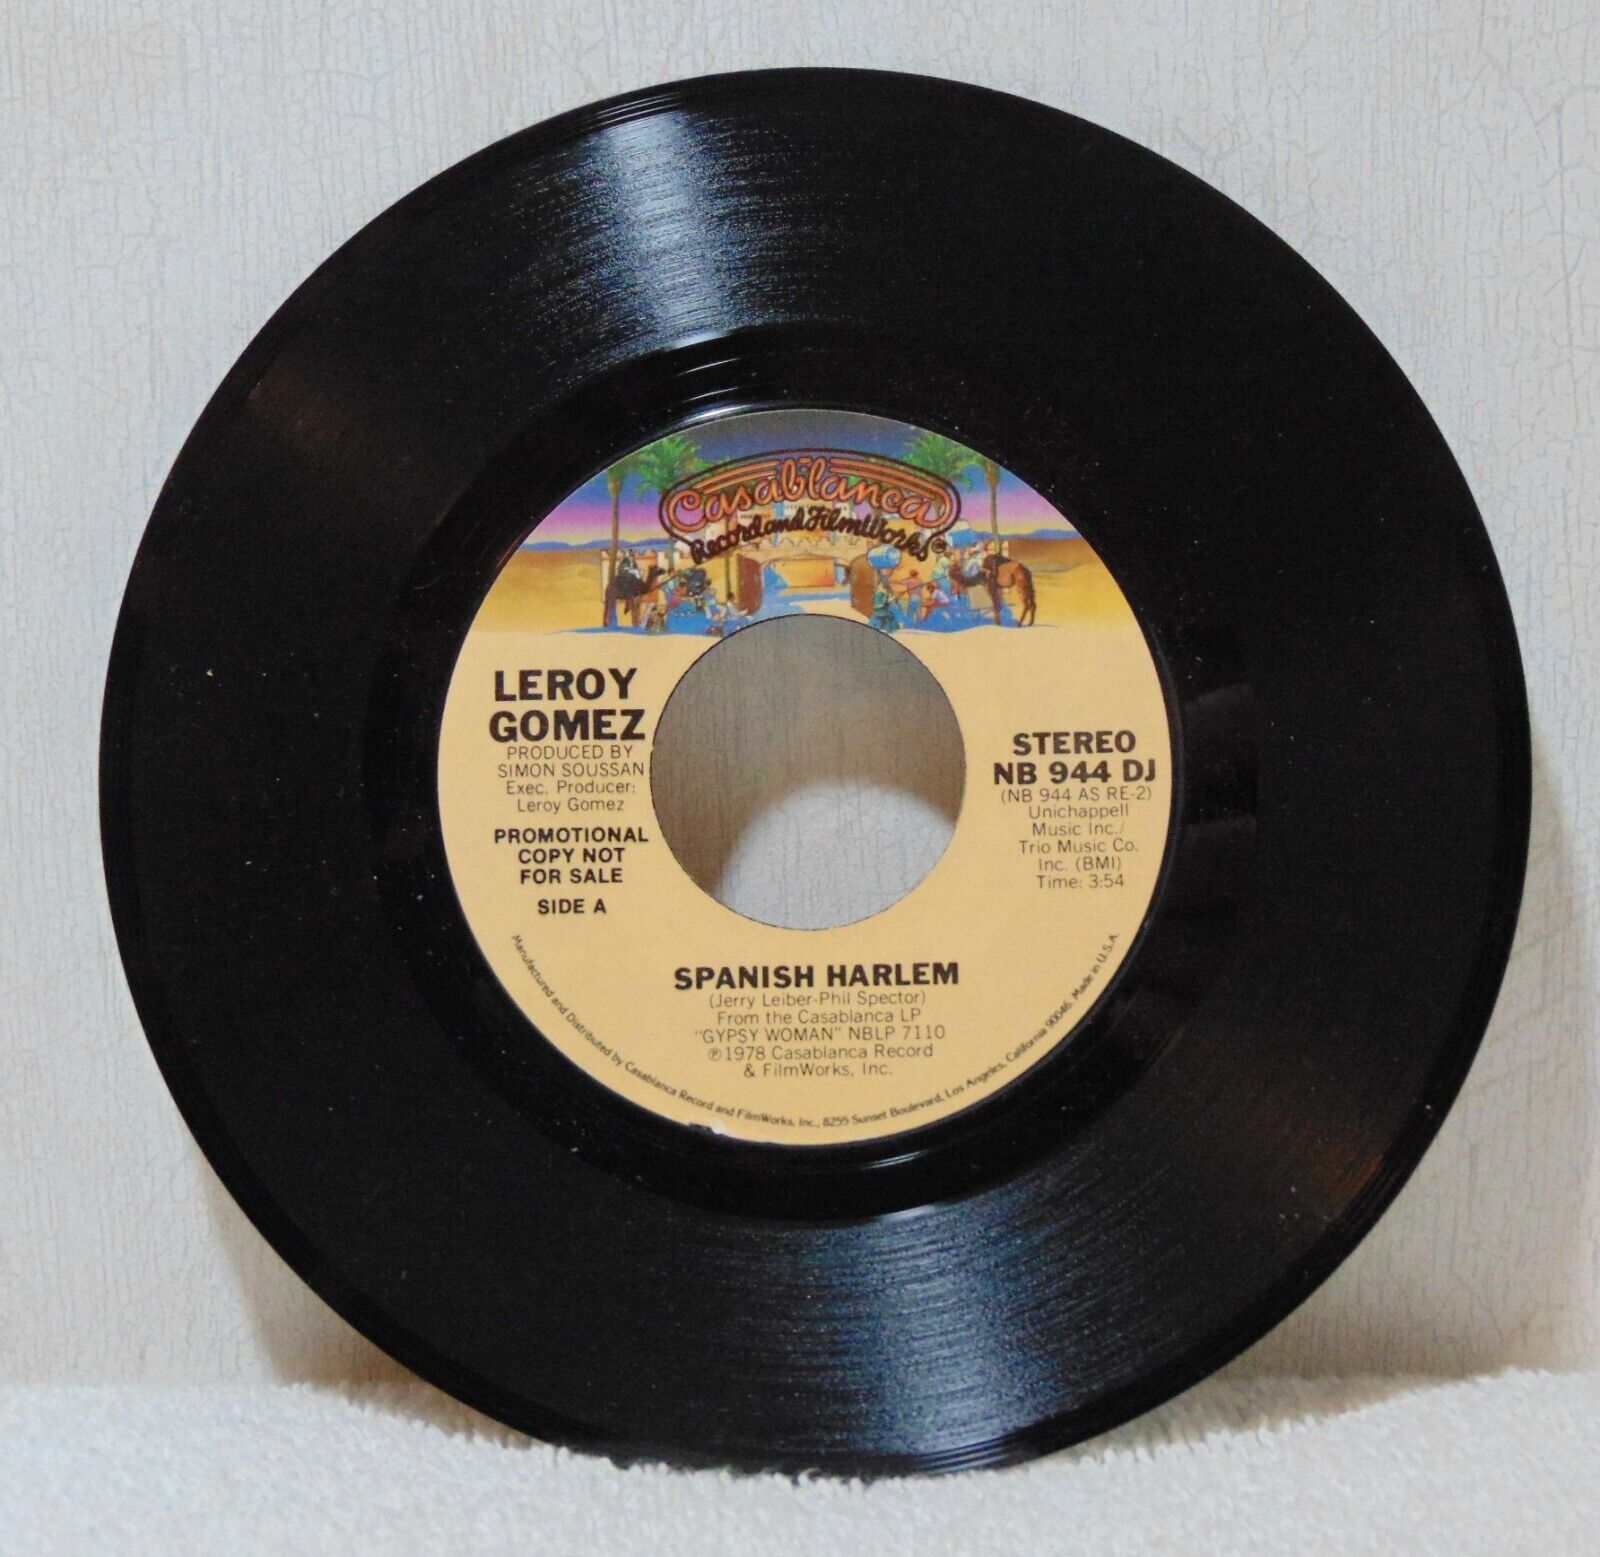 Leroy Gomez Spanish Harlem 1978 Casablanca NB 944 DJ Promo 7" 45 Vinyl Record NM